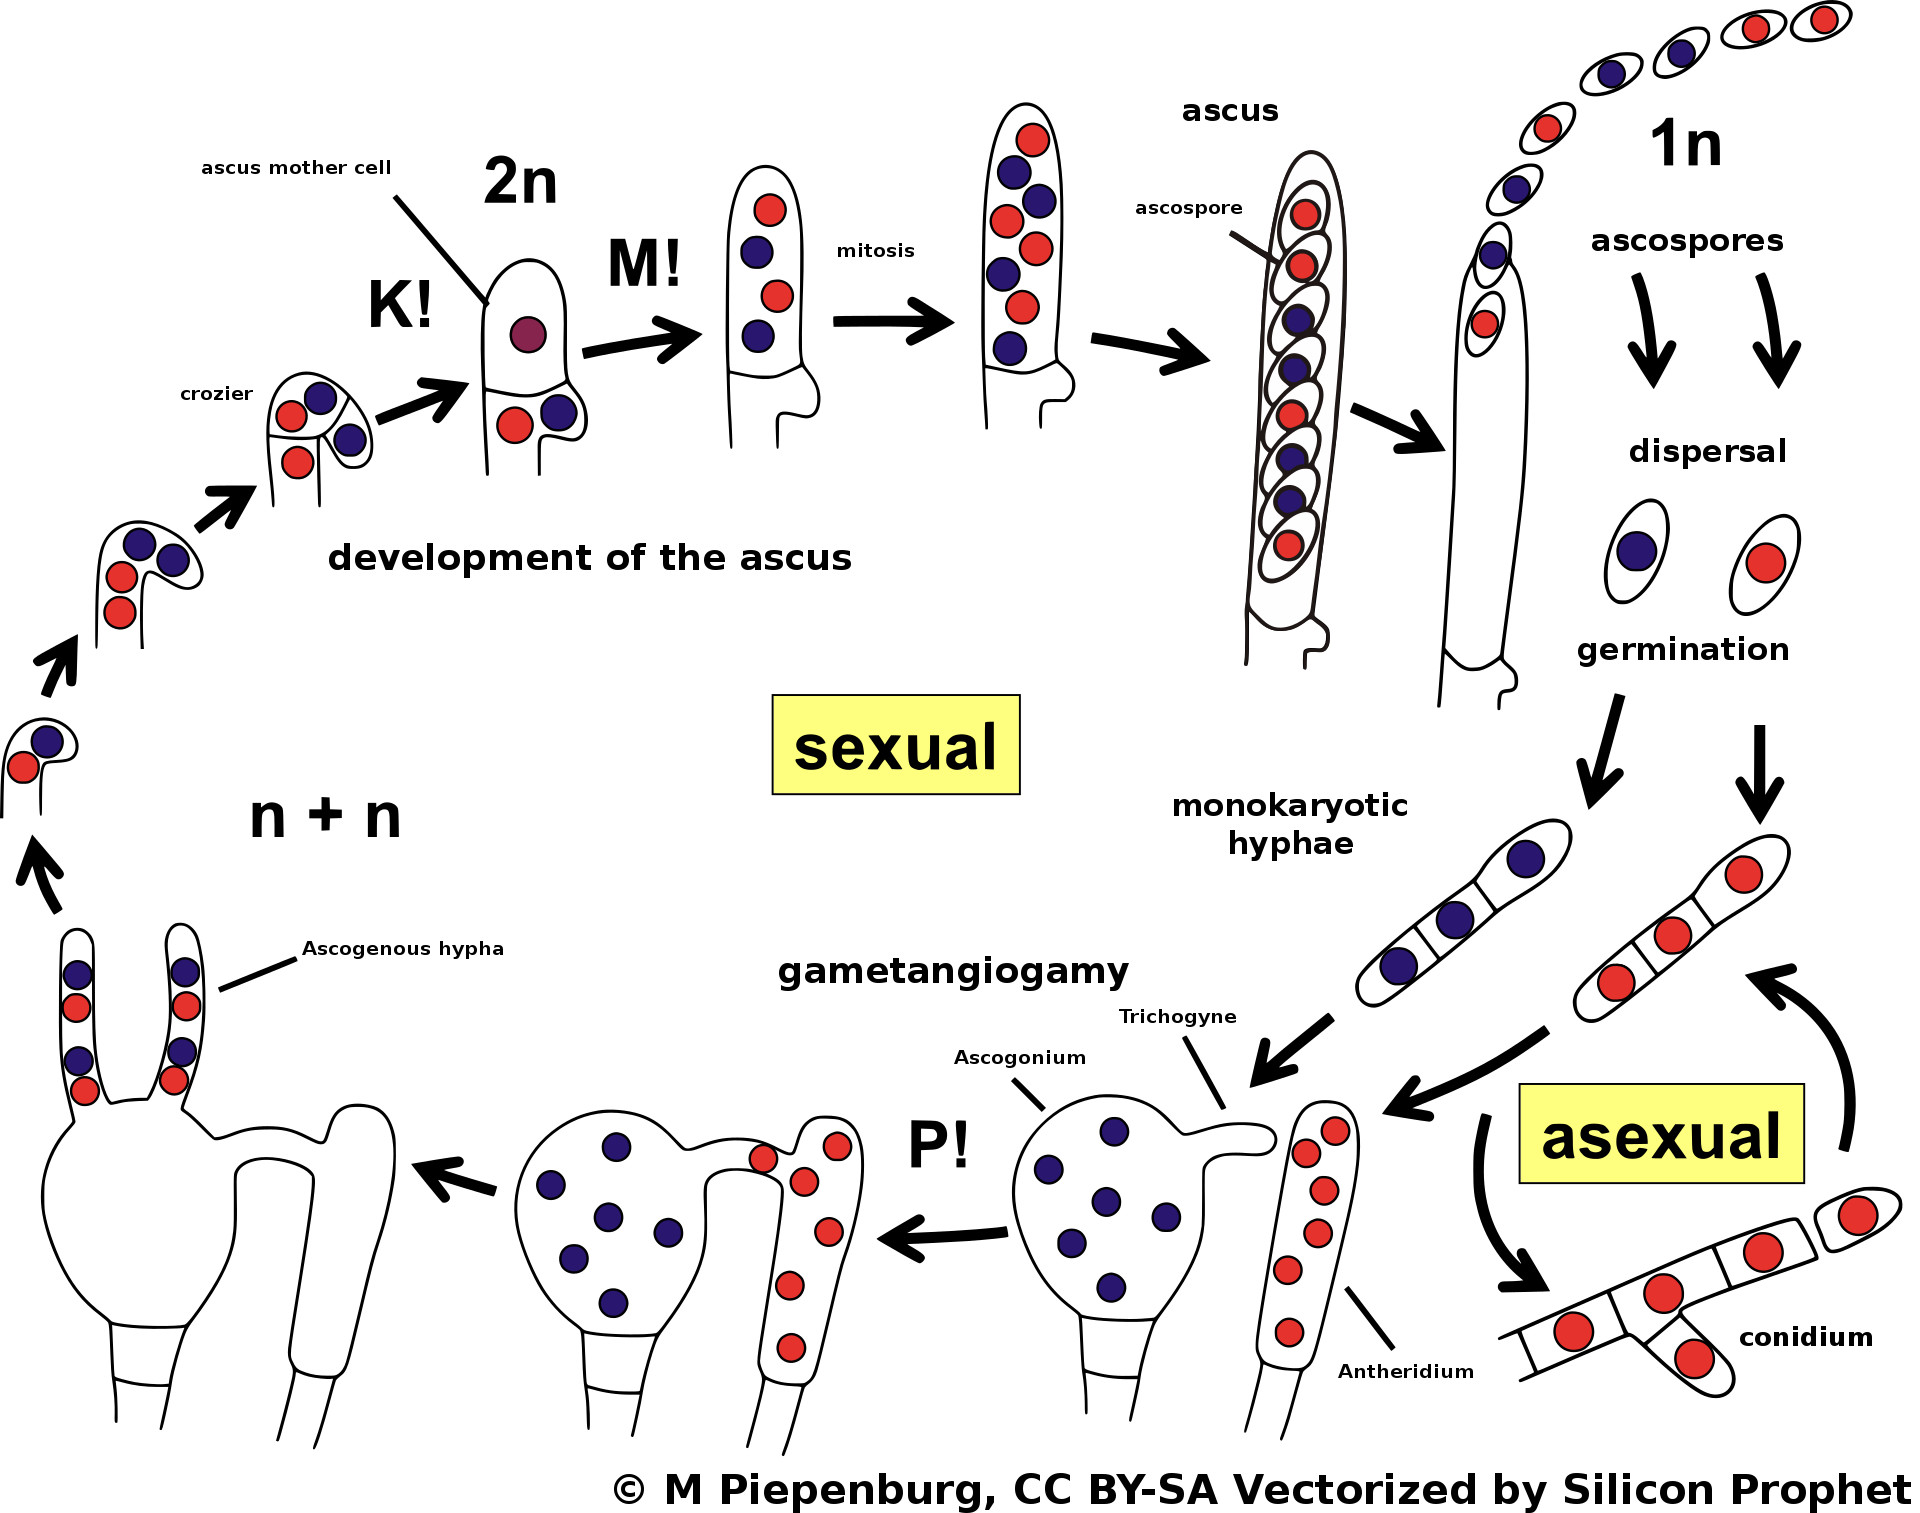 El ciclo de vida de la ascomicota con azul oscuro y un rojo más claro que representan dos tipos de apareamiento diferentes